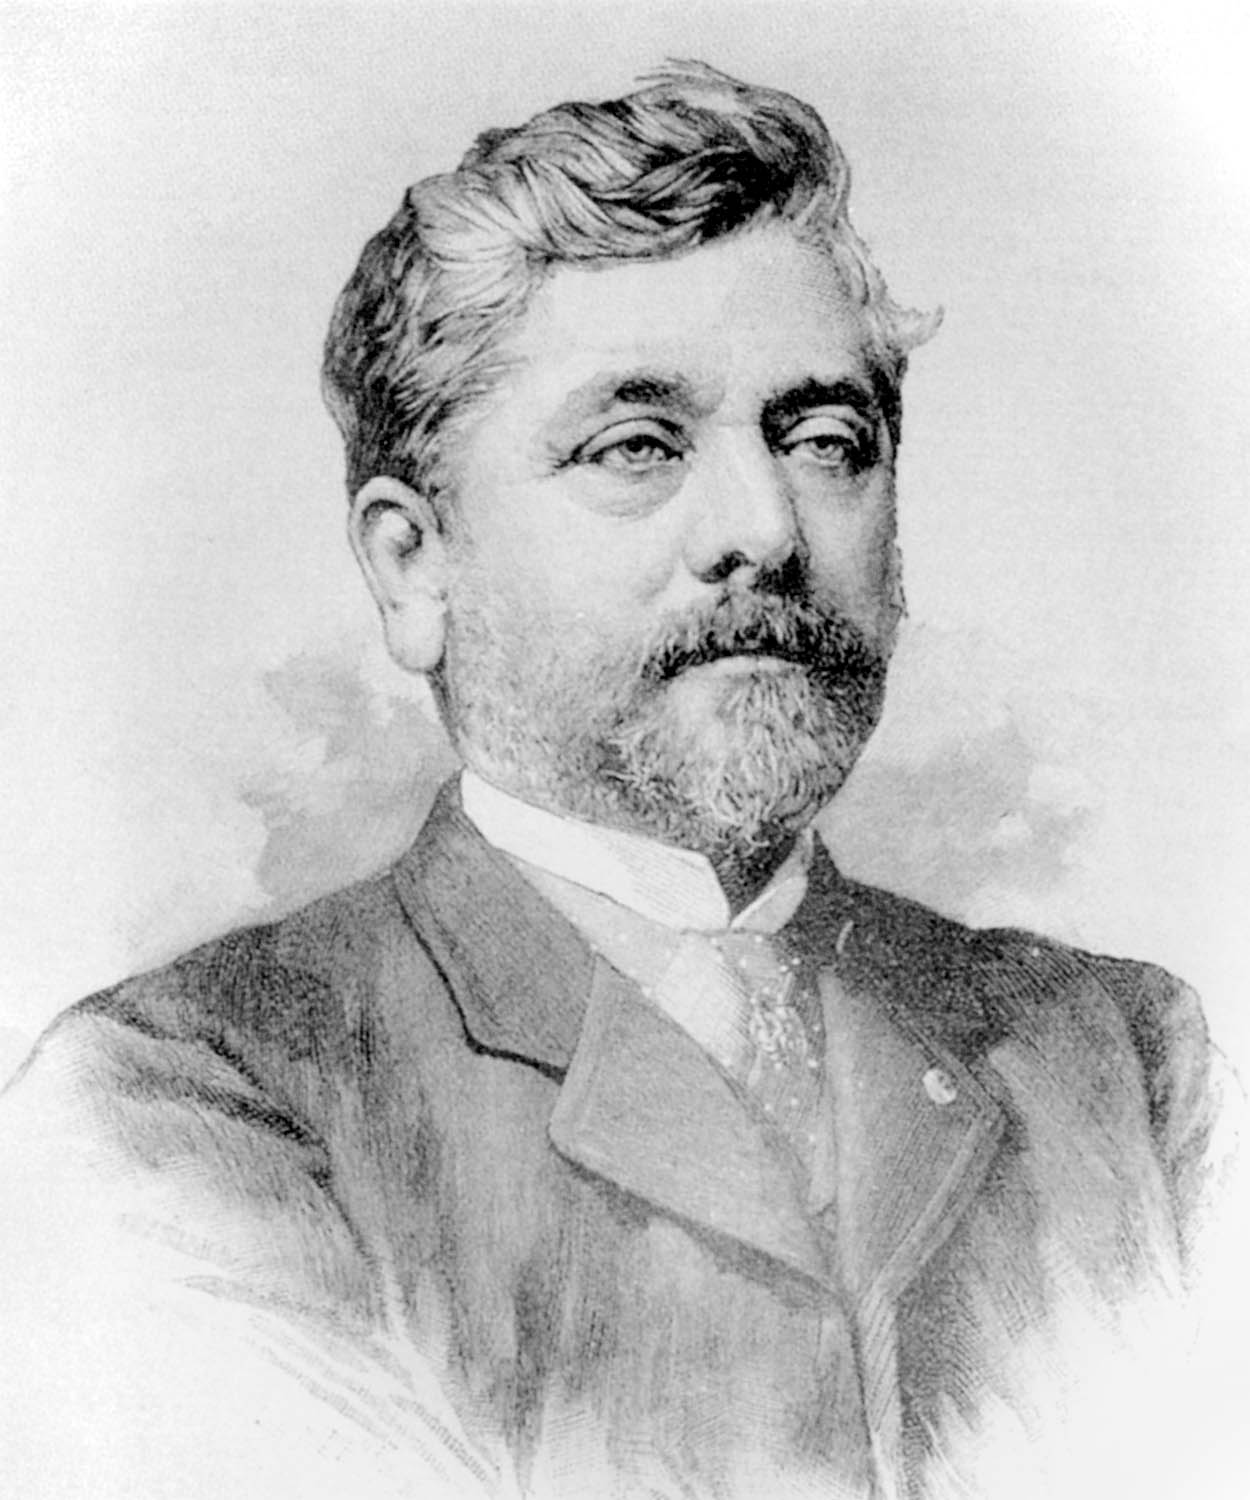  Biografi Gustave Eiffel